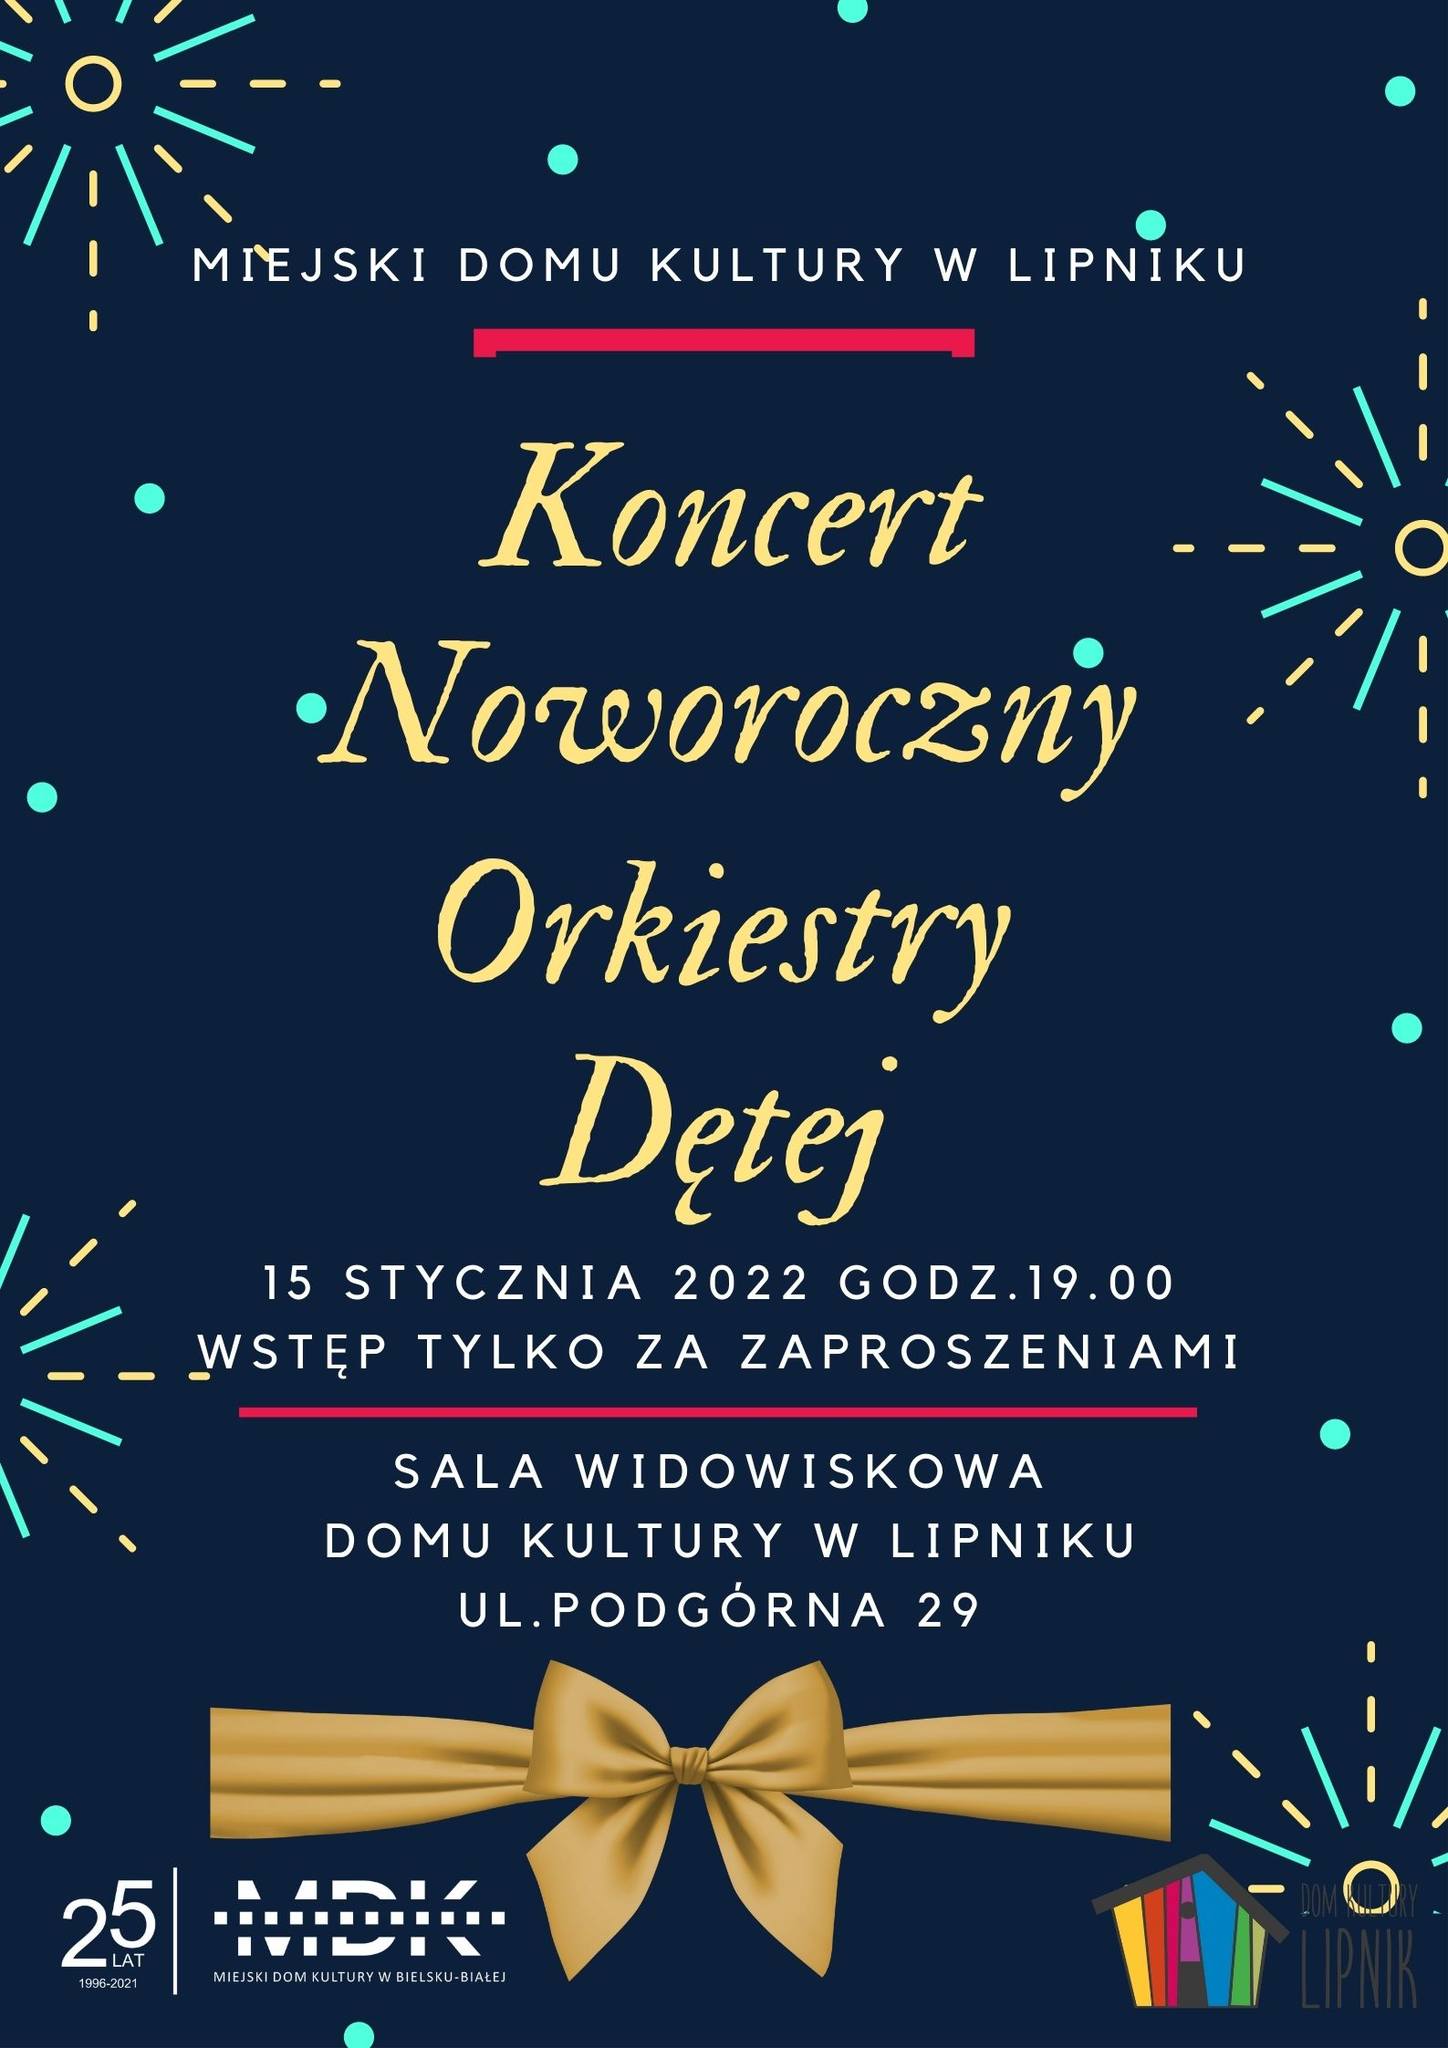  Koncert noworoczny orkiestry dętej Na zdjęciu plakat koncertu